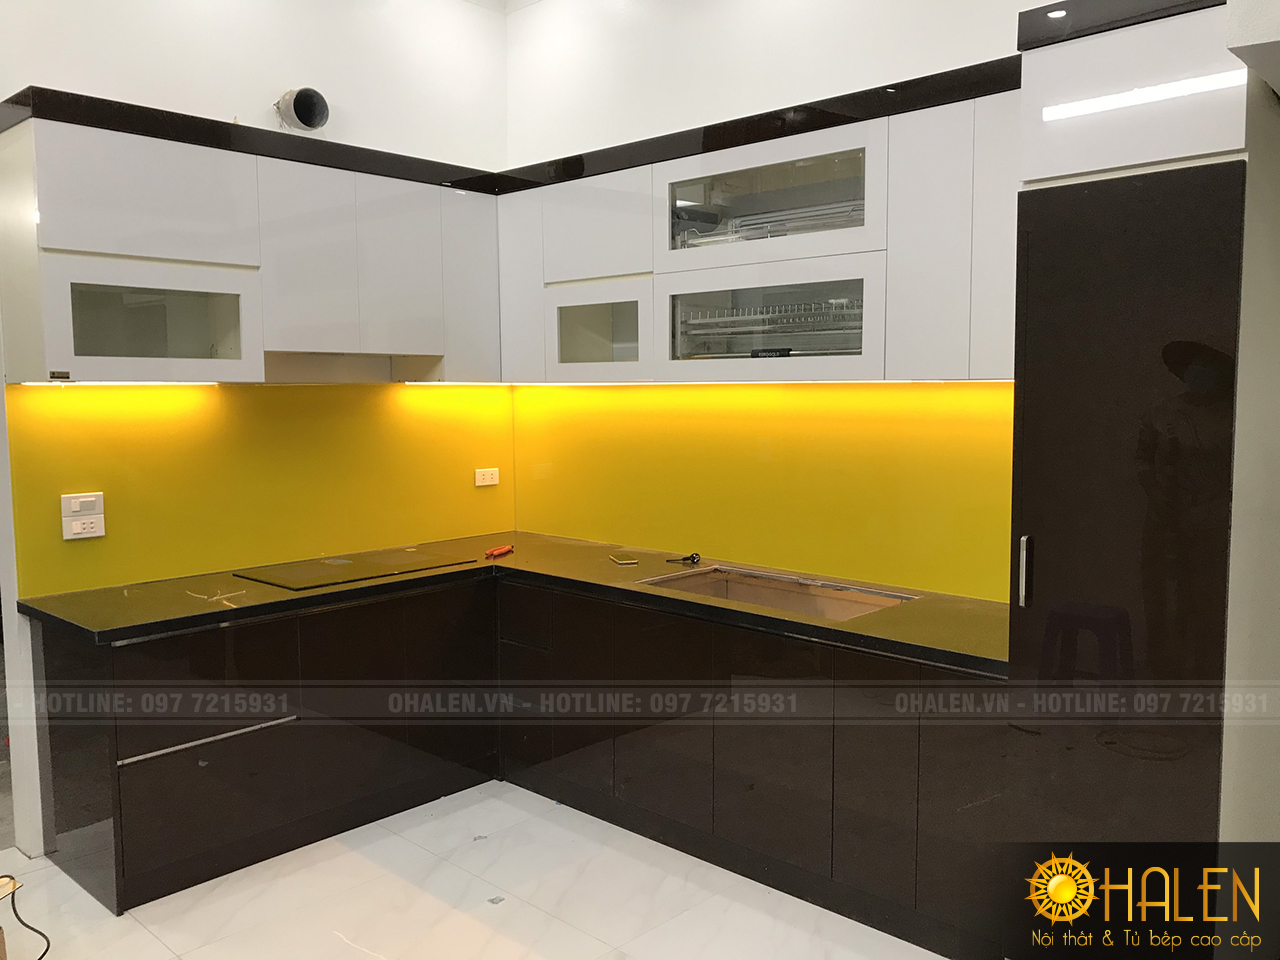 Hình ảnh bộ tủ bếp đã hoàn thiện, tủ bếp cánh trắng kết hợp nâu, kính màu vàng chanh nổi bật